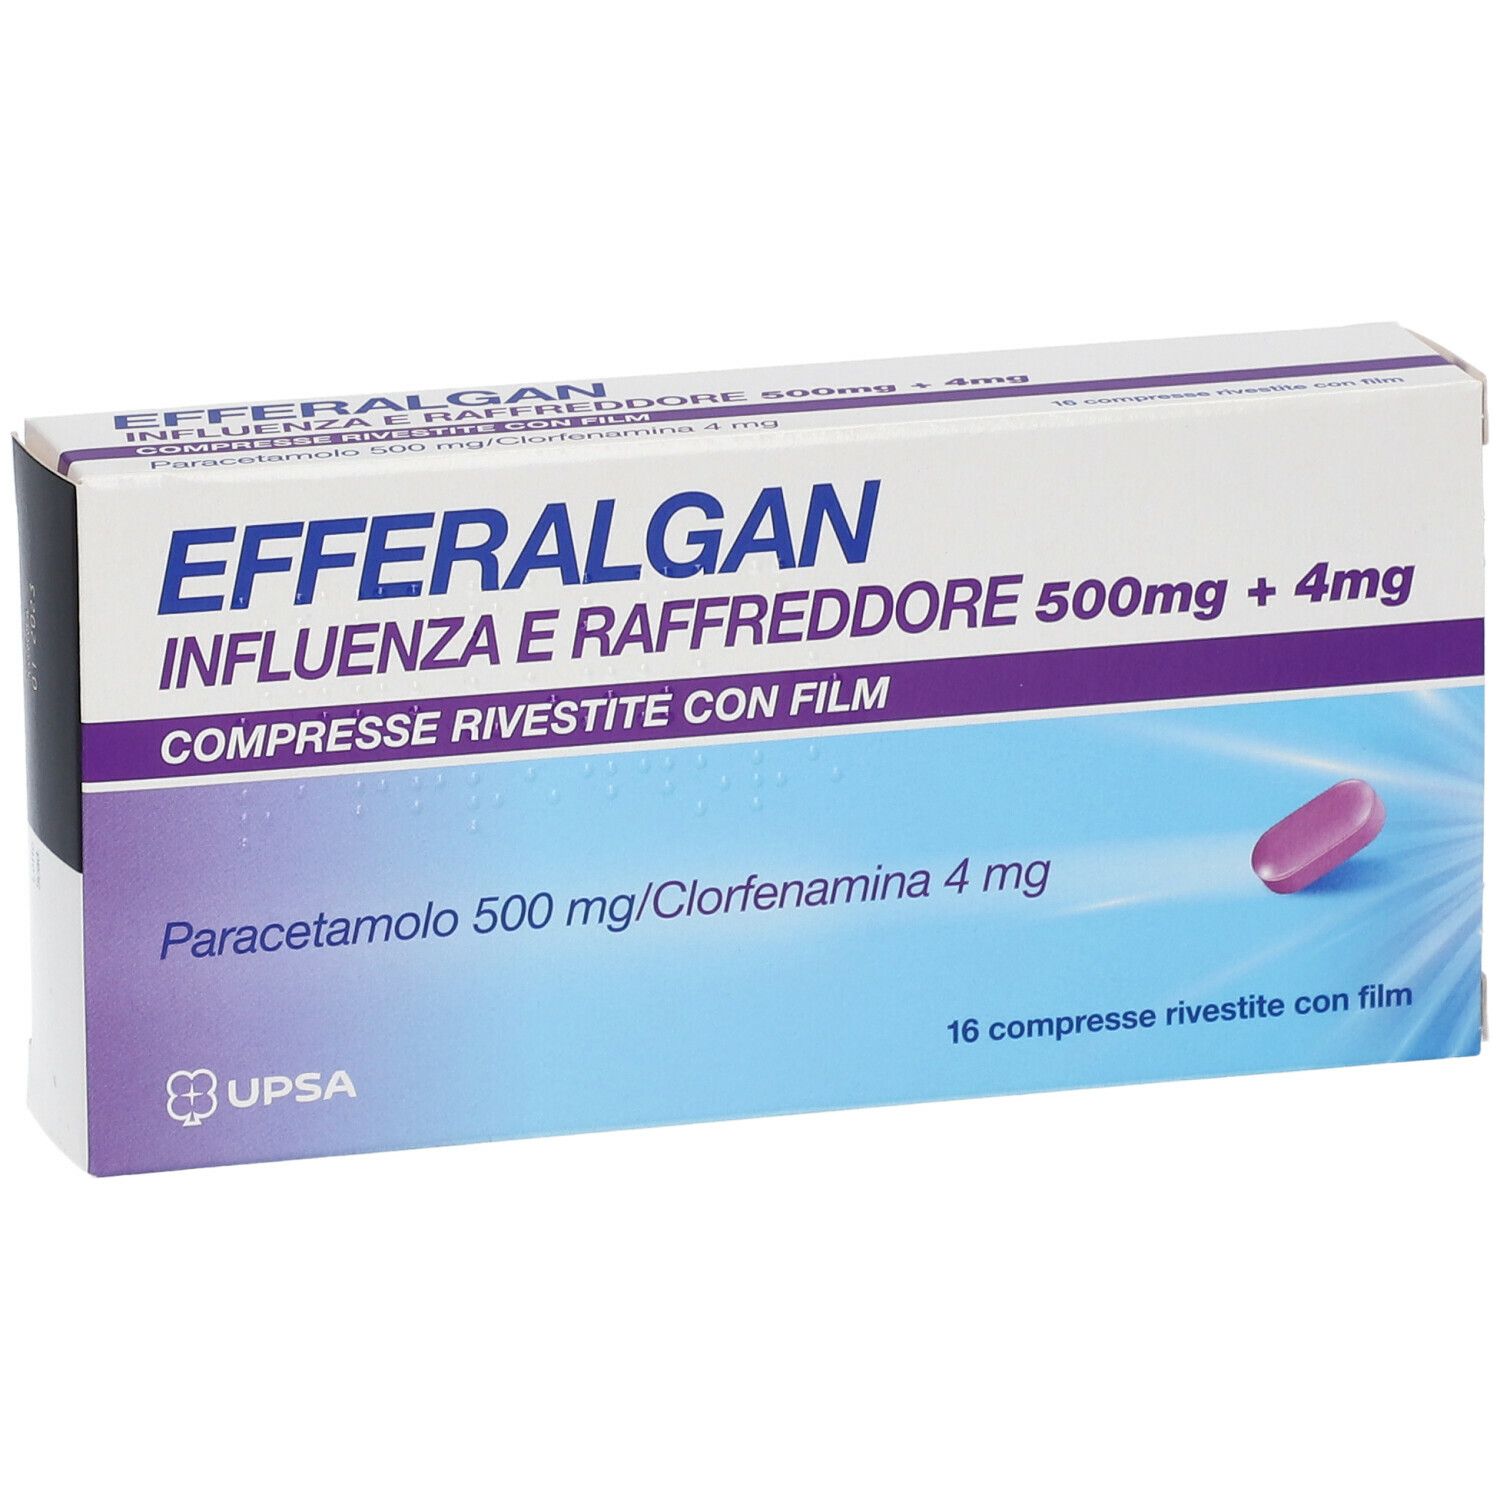 UPSA EFFERALGAN Influenza e Raffreddore 500mg + 4mg Compresse Rivestite con Film